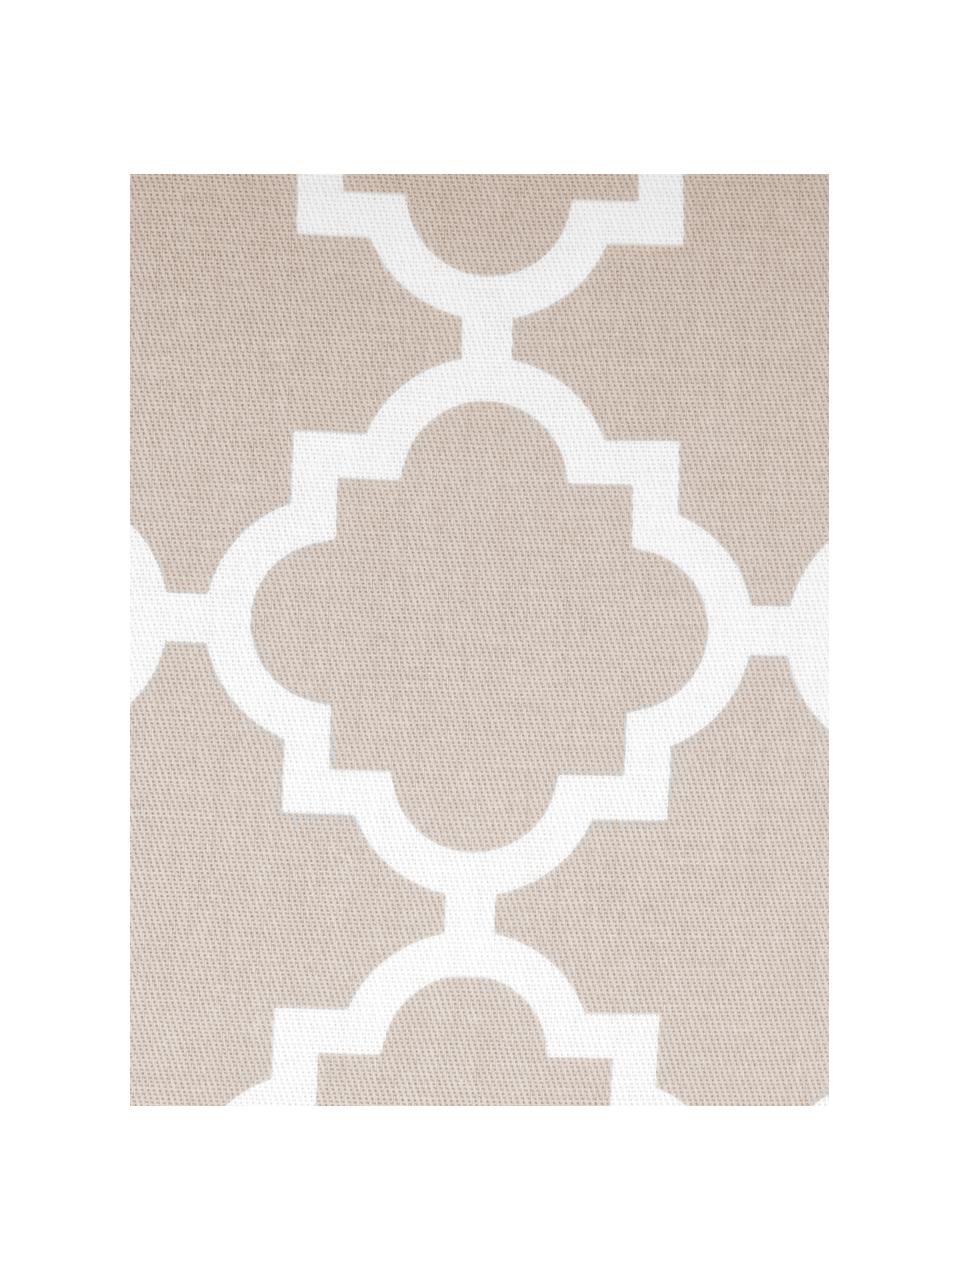 Kissenhülle Lana mit grafischem Muster, 100% Baumwolle, Beige, Weiß, B 30 x L 50 cm